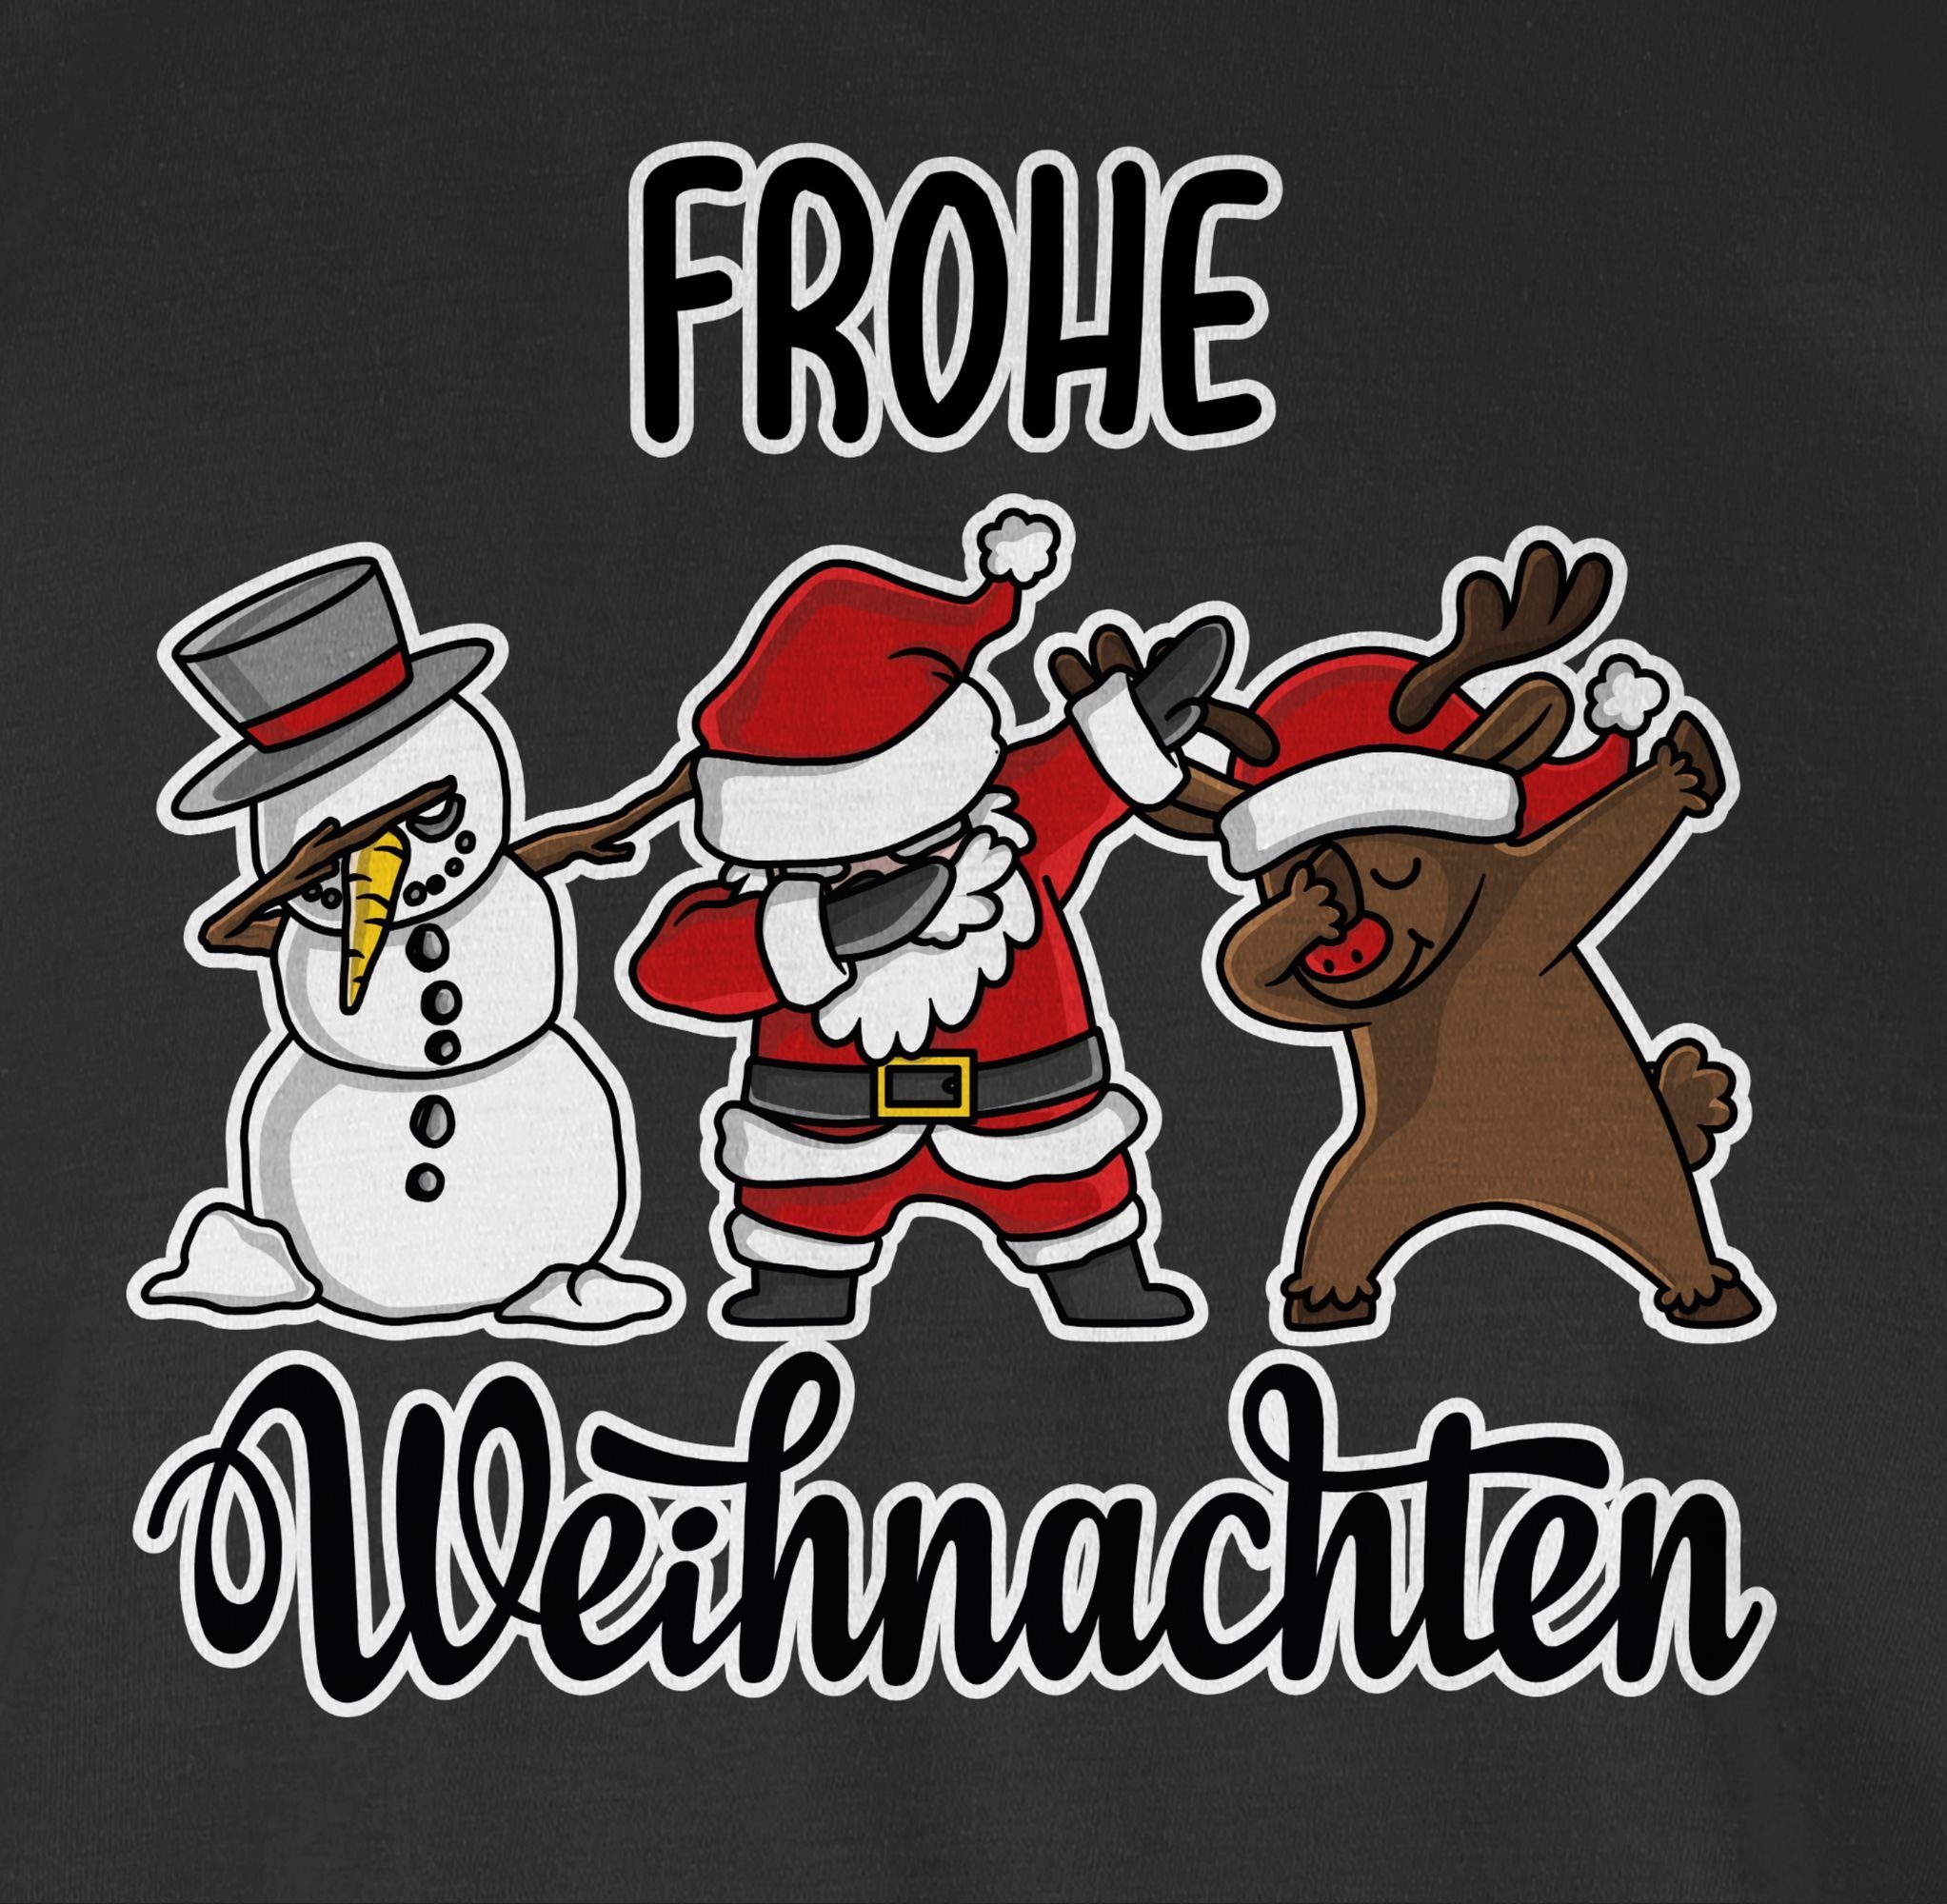 1 Frohe Kleidung Weihachten Weihnachten Shirtracer Rundhalsshirt Schwarz Dabbing